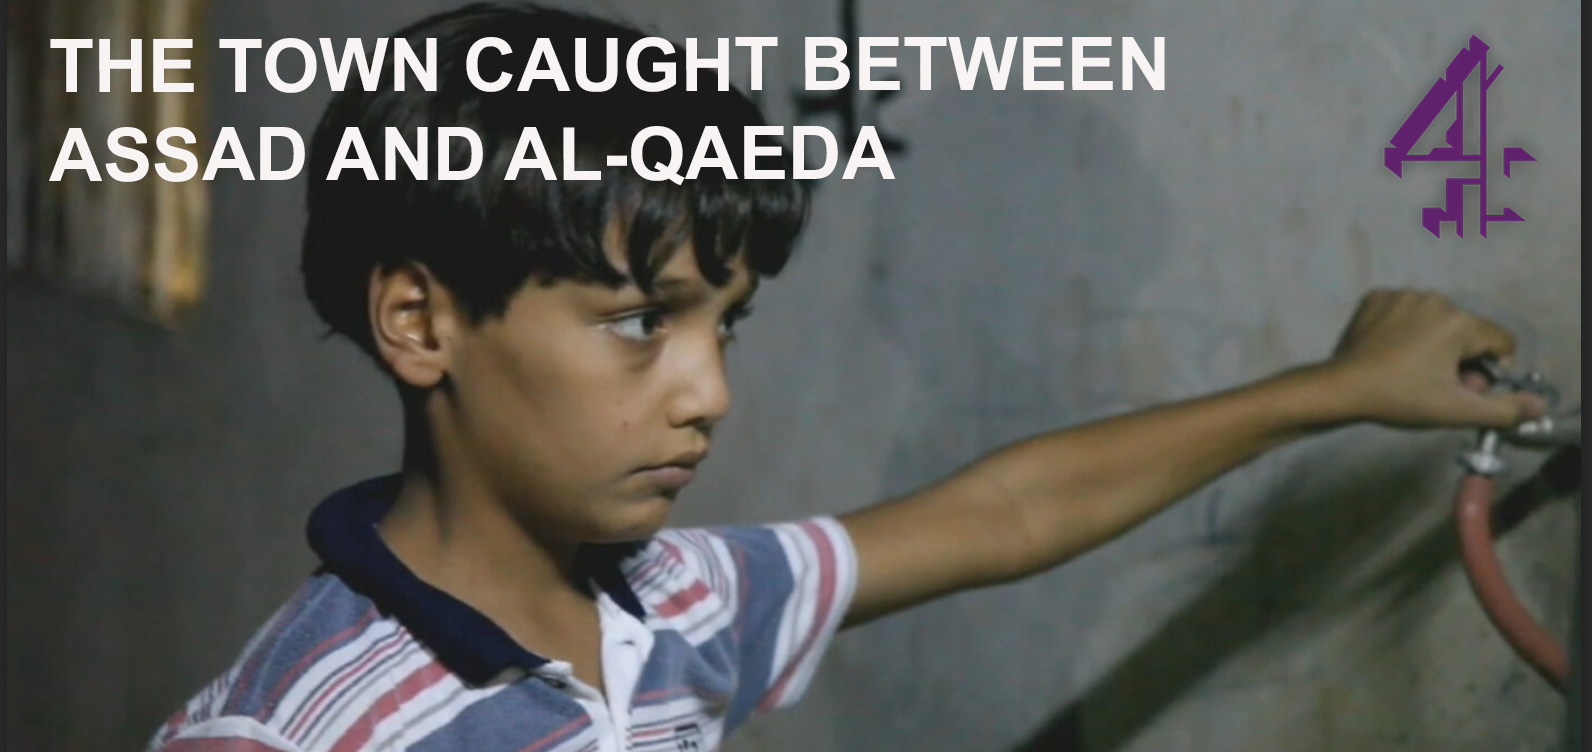 Cover Town Caught Between Assad and Al-Qaeda.png